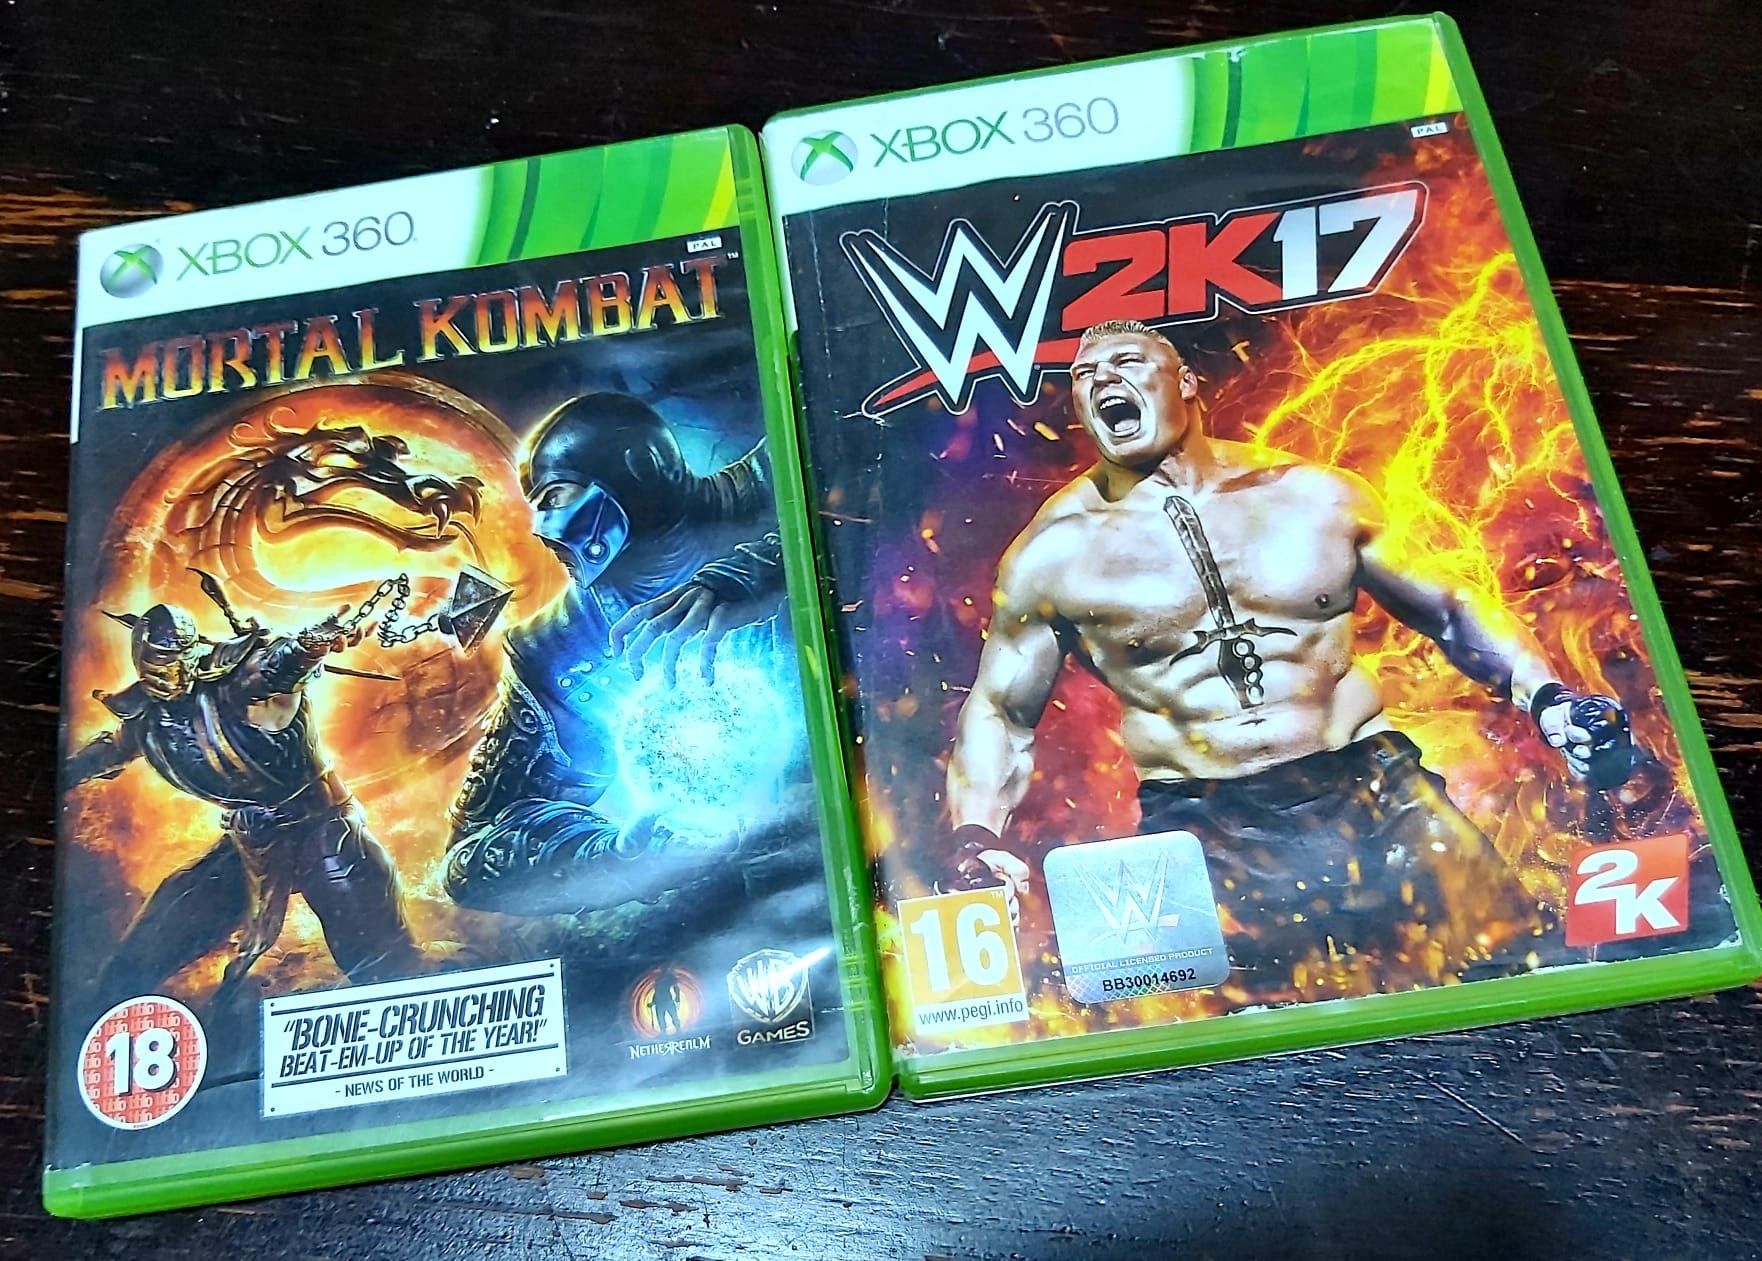 Mortal Kombat / W2K17 /Injustice 100 bucata Xbox 360